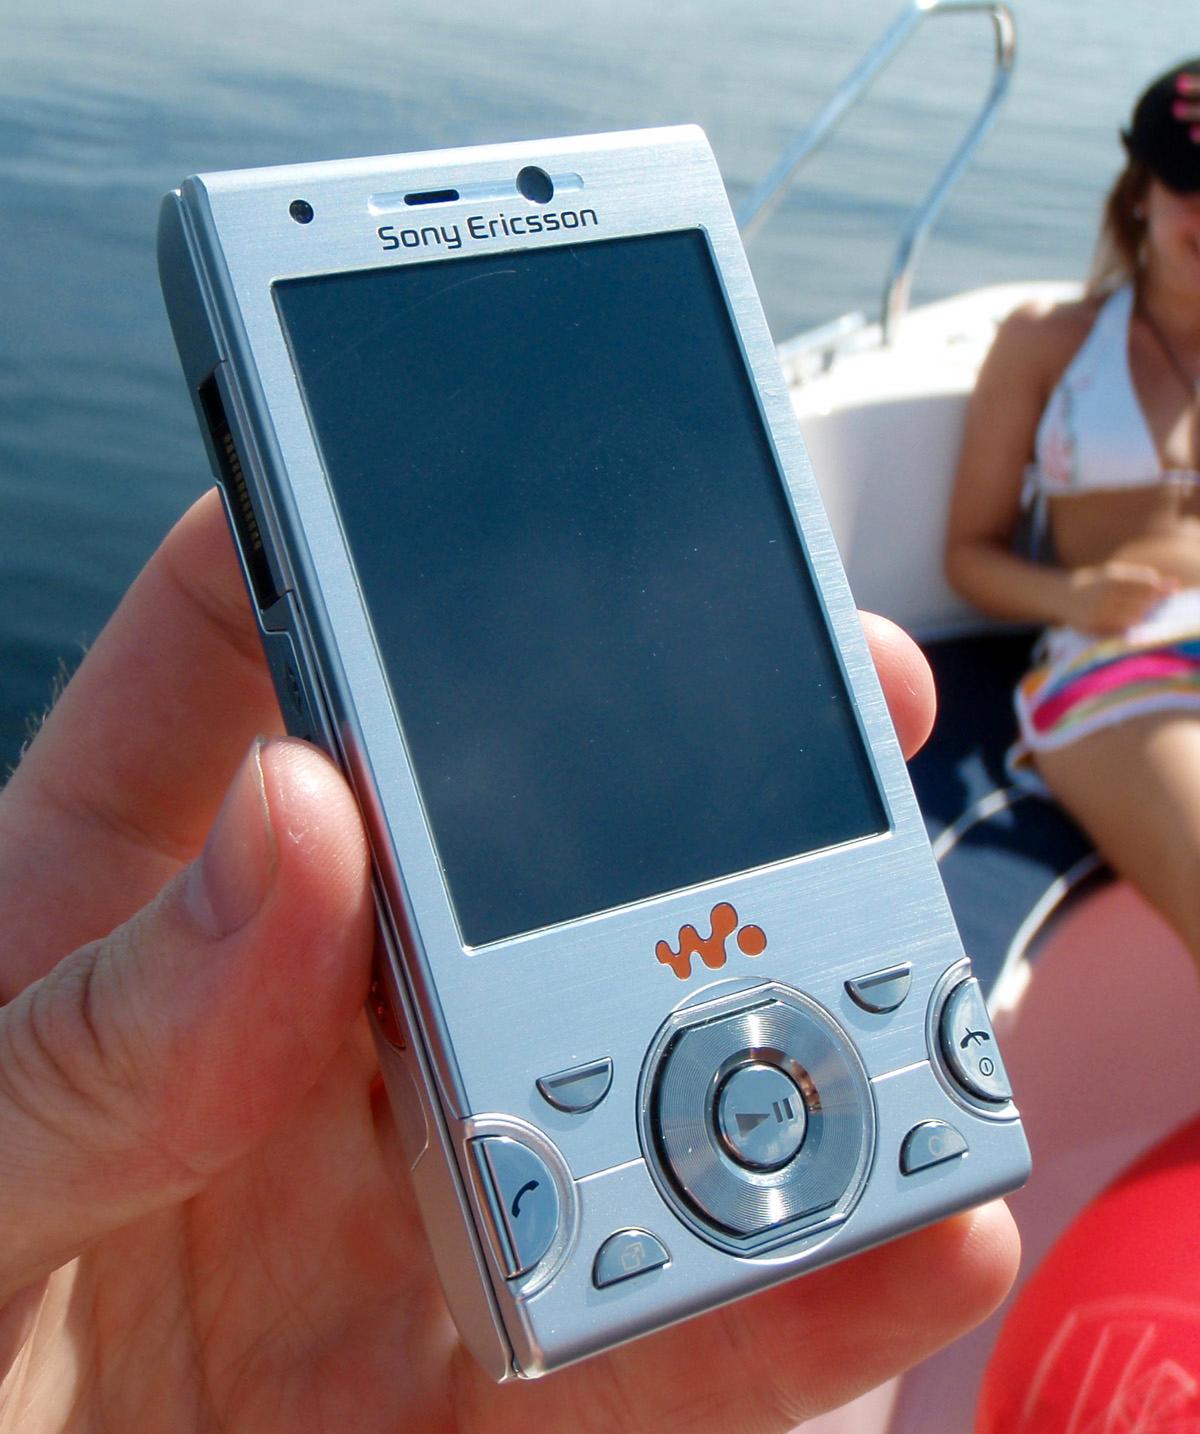 W995 må sies å være en lekker telefon, uten at det går på bekostning av funksjonaliteten.